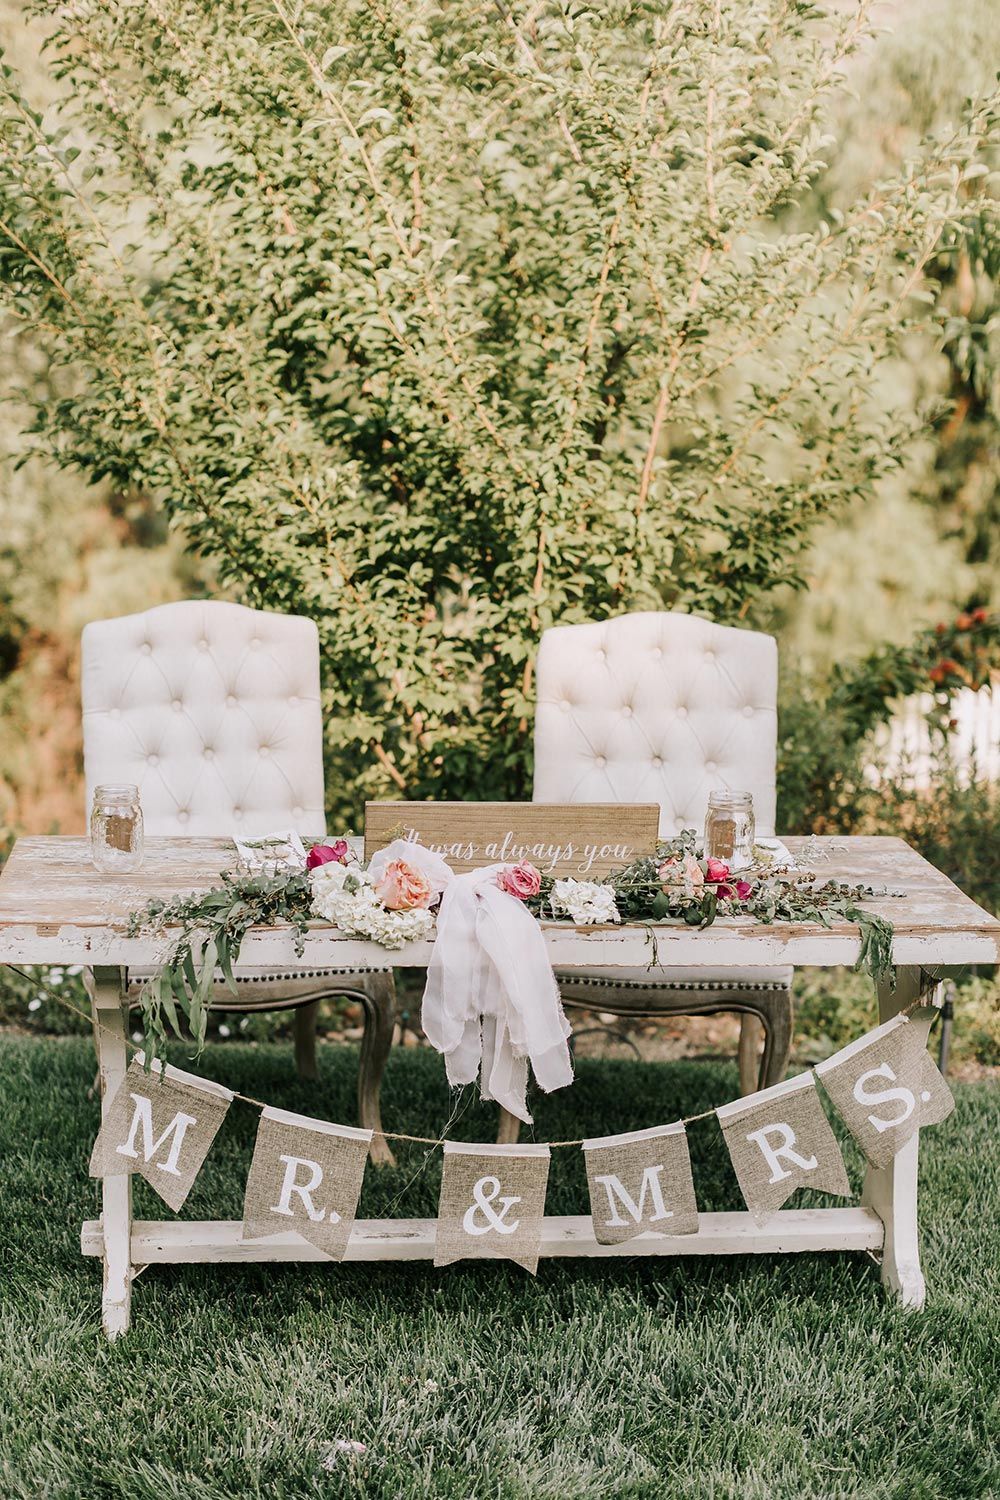 Pretty in Pink: A Backyard Wedding with Relaxed Elegance -   19 backyard wedding ideas